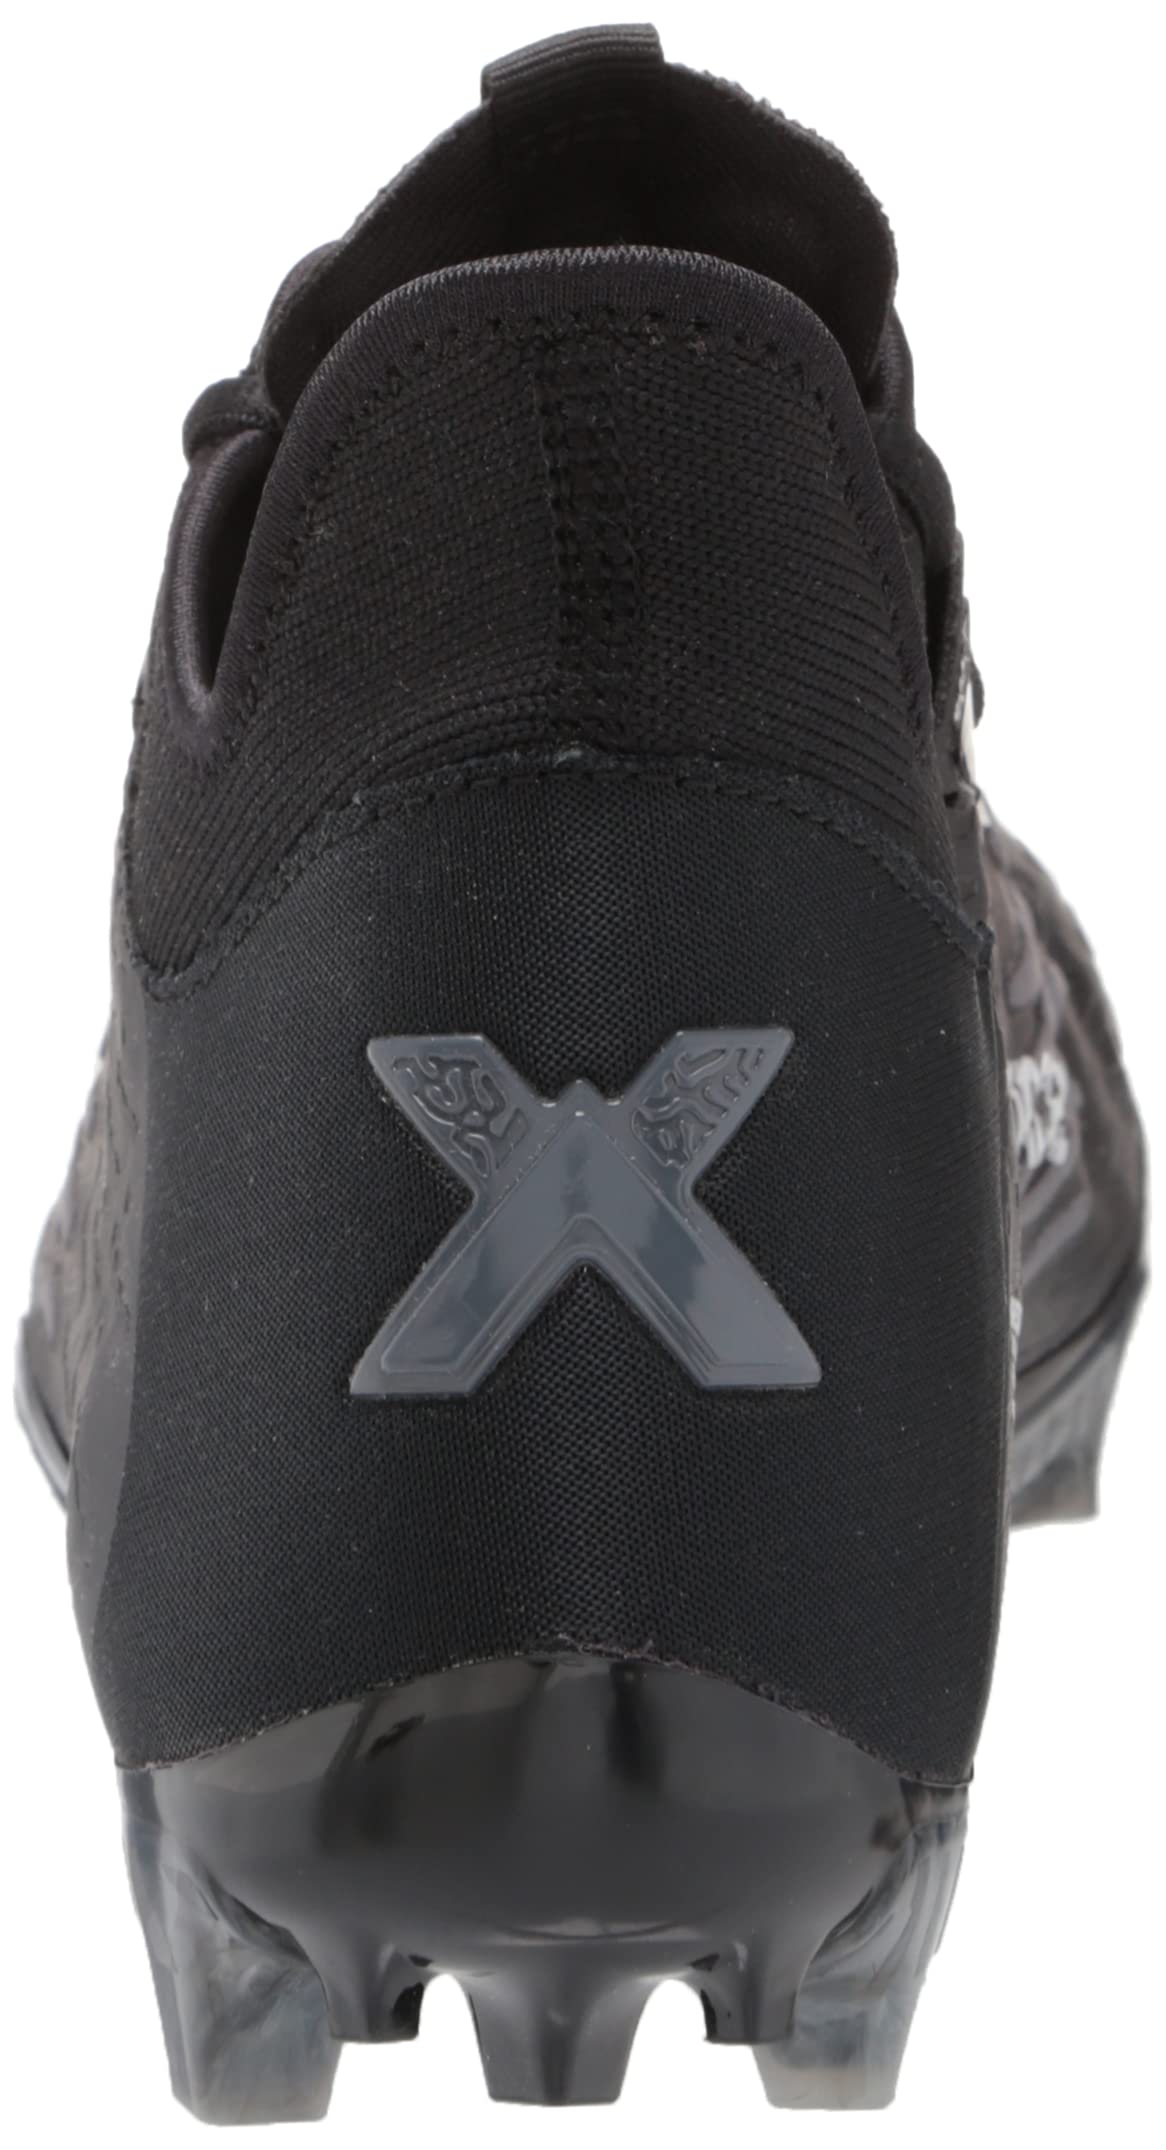 New Balance Men's Burn X 3 Speed Lacrosse Shoe